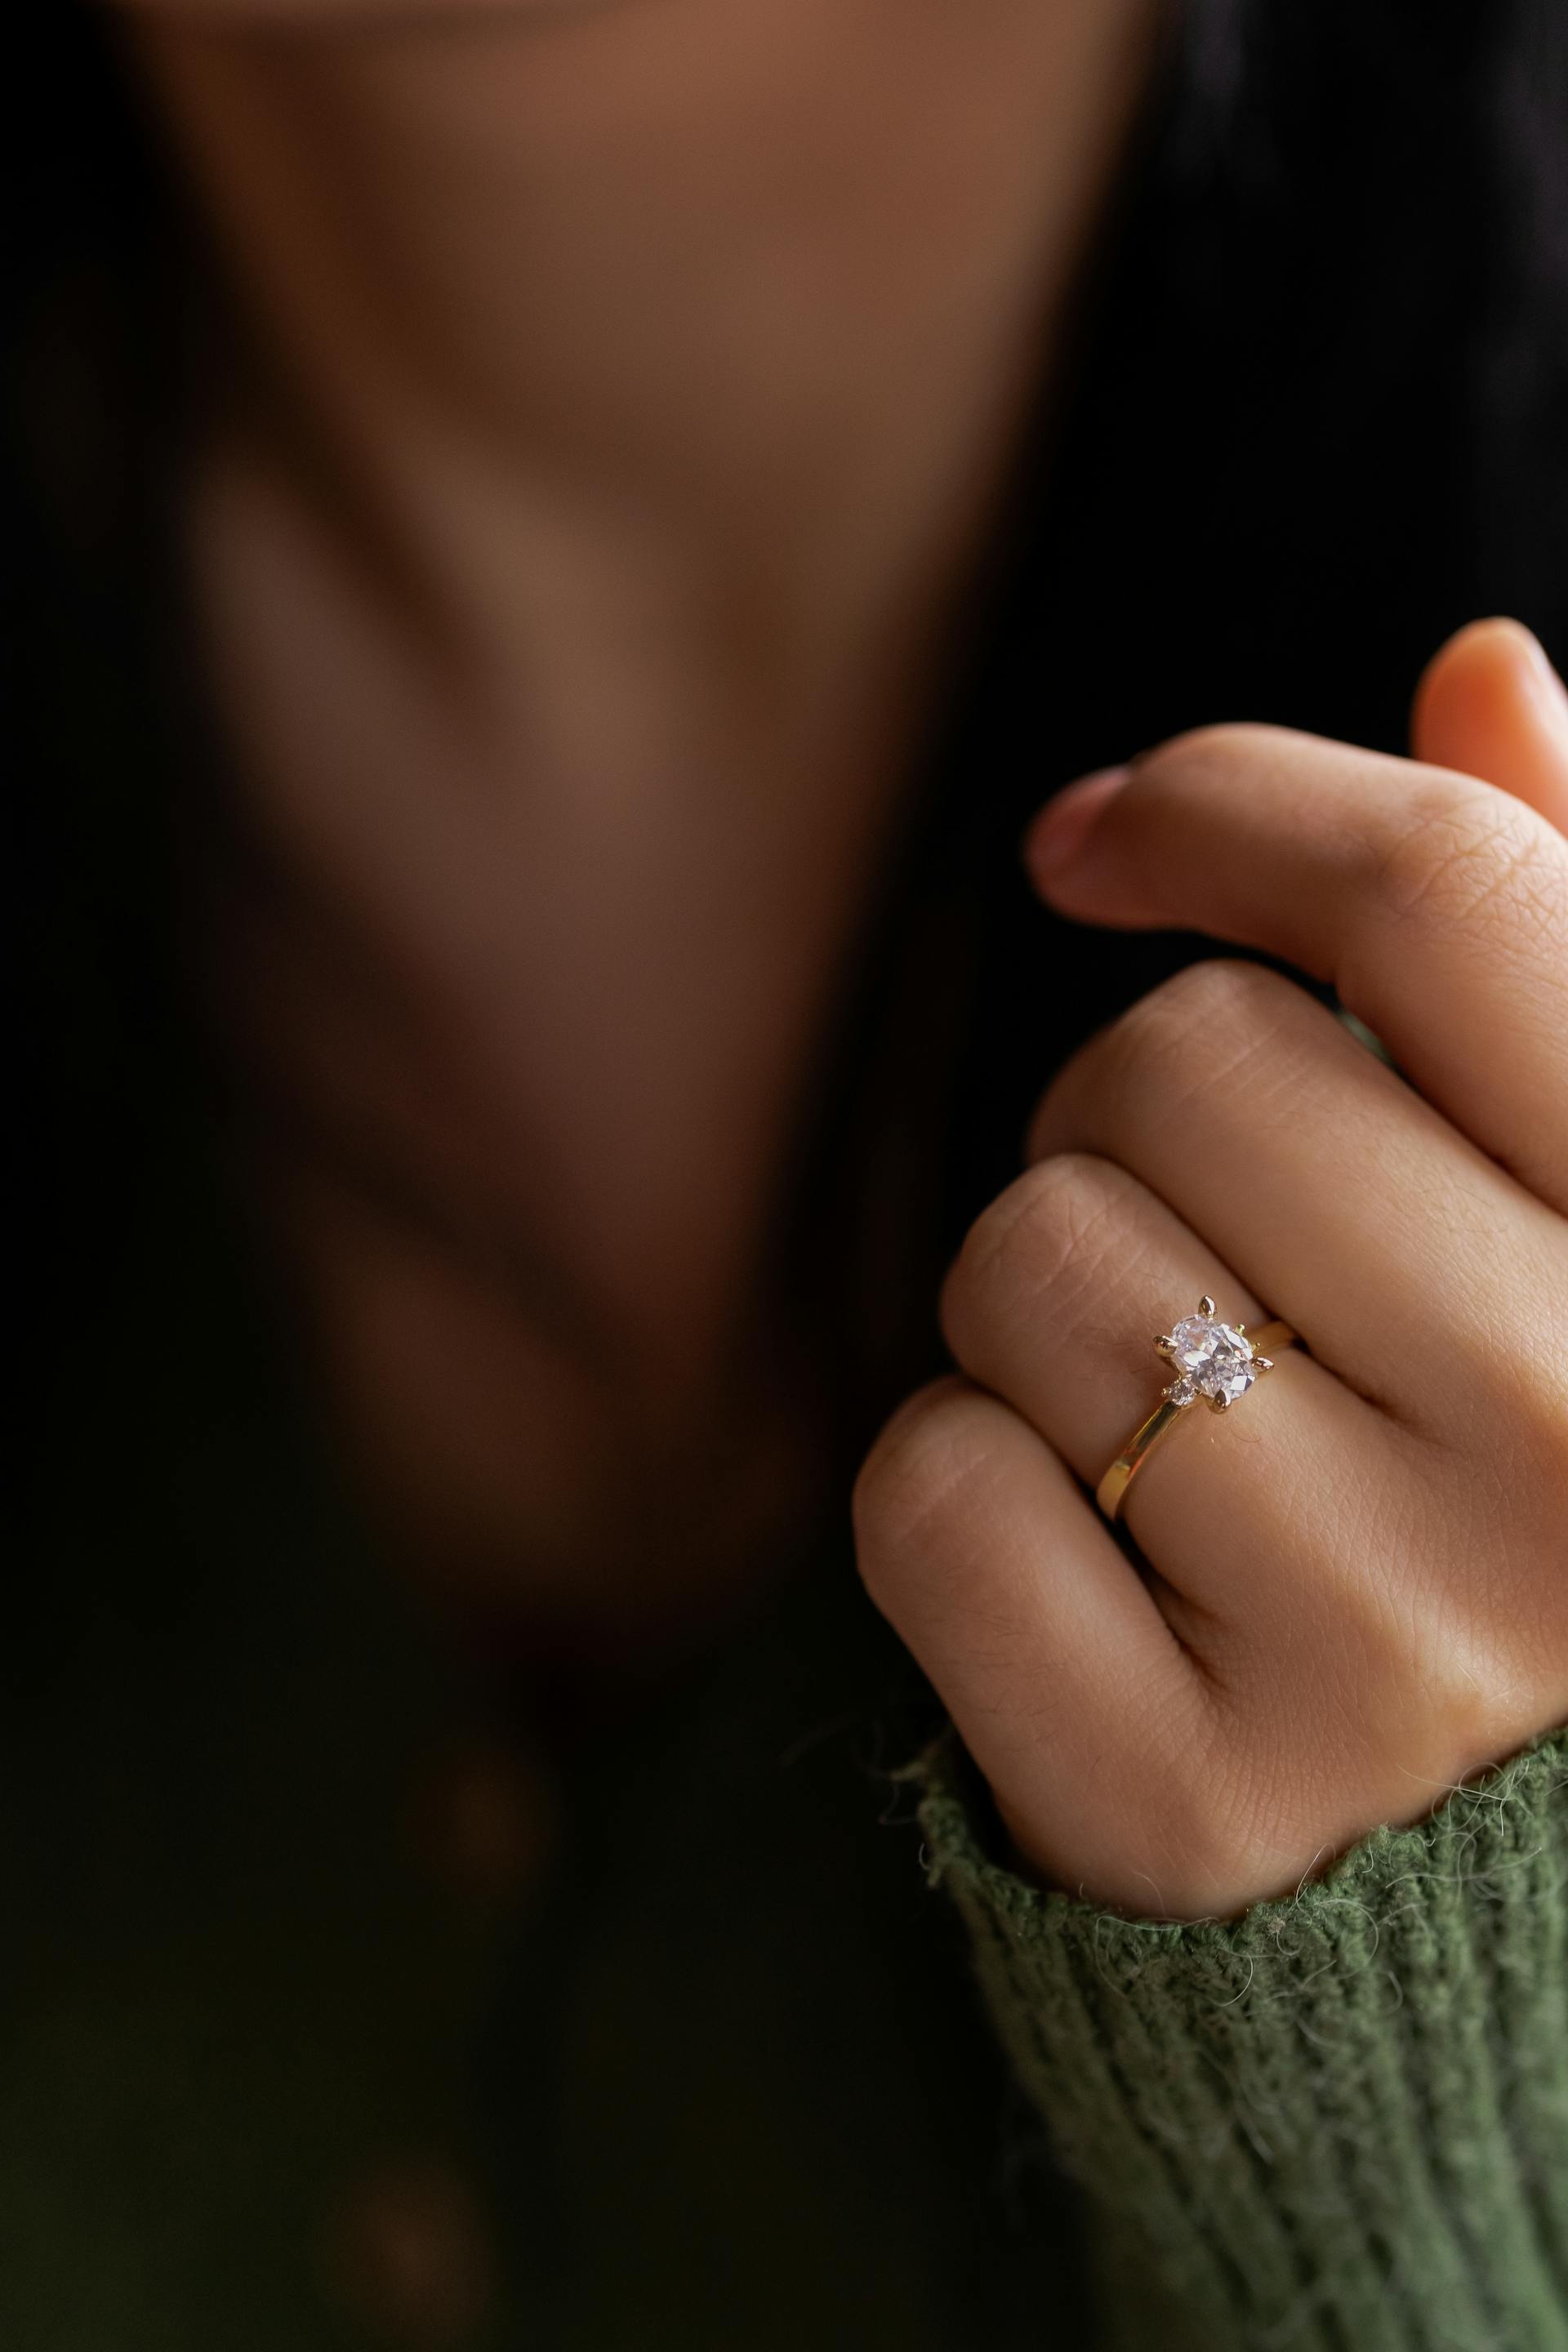 Verlobungsring an der Hand einer Frau | Quelle: Pexels